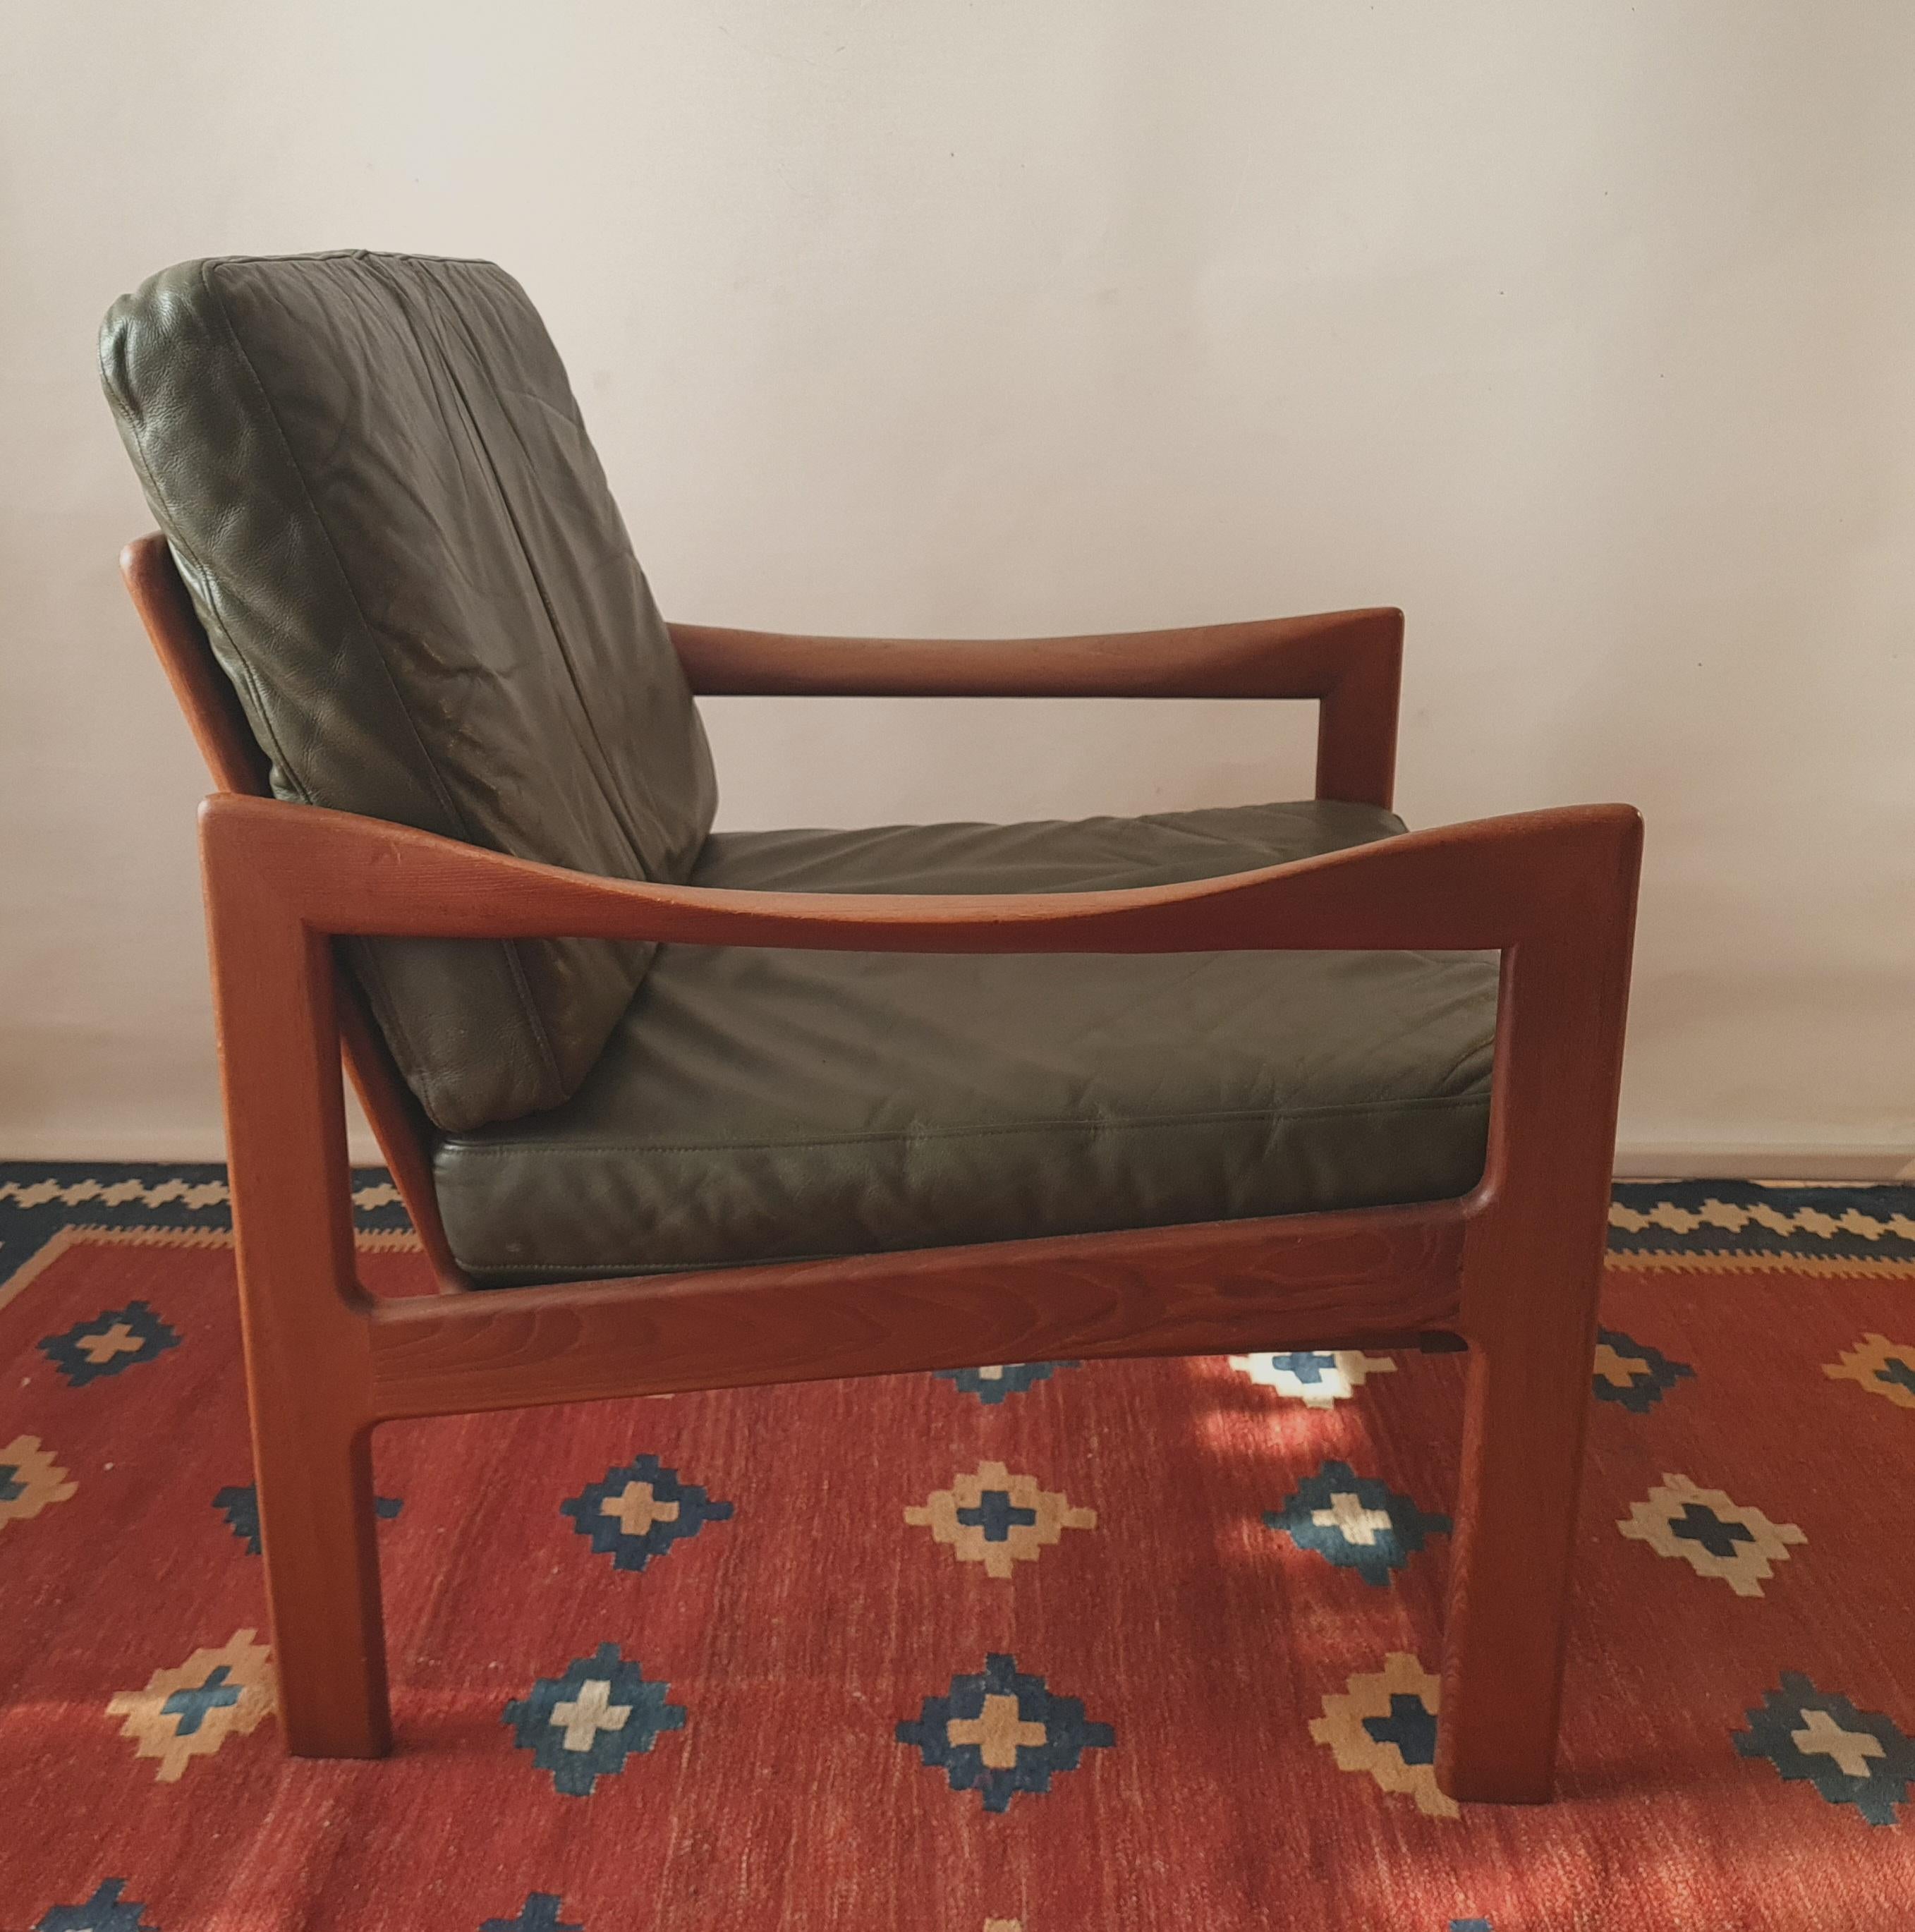 Danish Illum Wikkelso armchair 1962 in Teak for Niels Eilersen For Sale